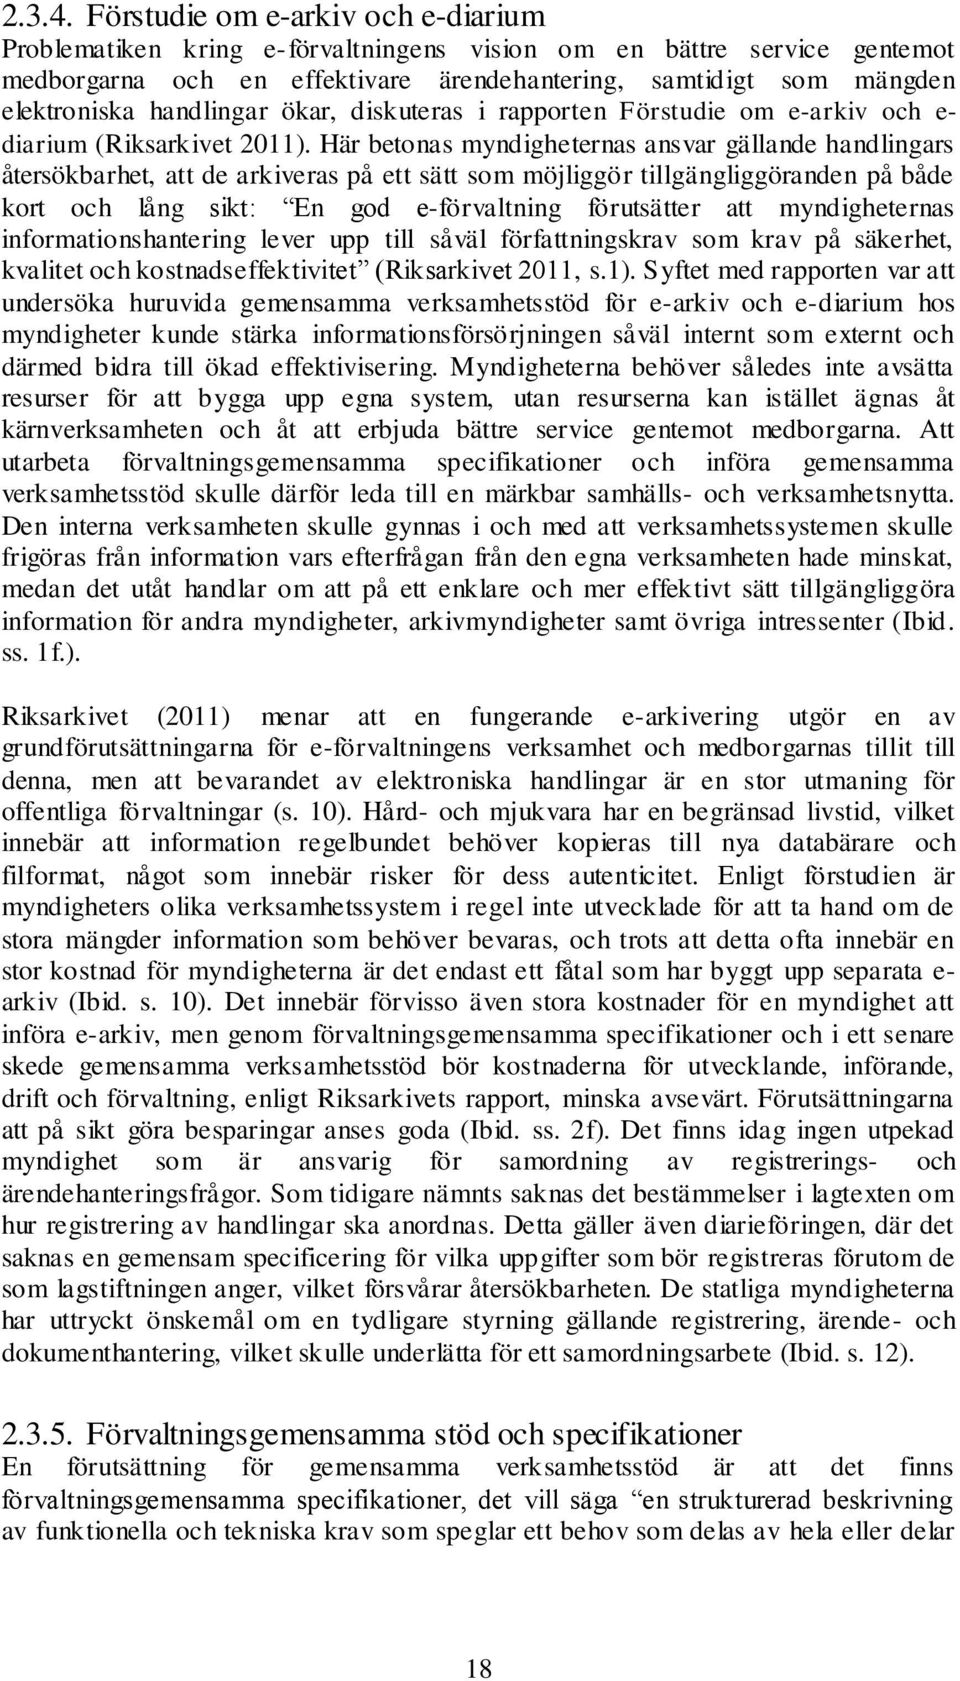 handlingar ökar, diskuteras i rapporten Förstudie om e-arkiv och e- diarium (Riksarkivet 2011).